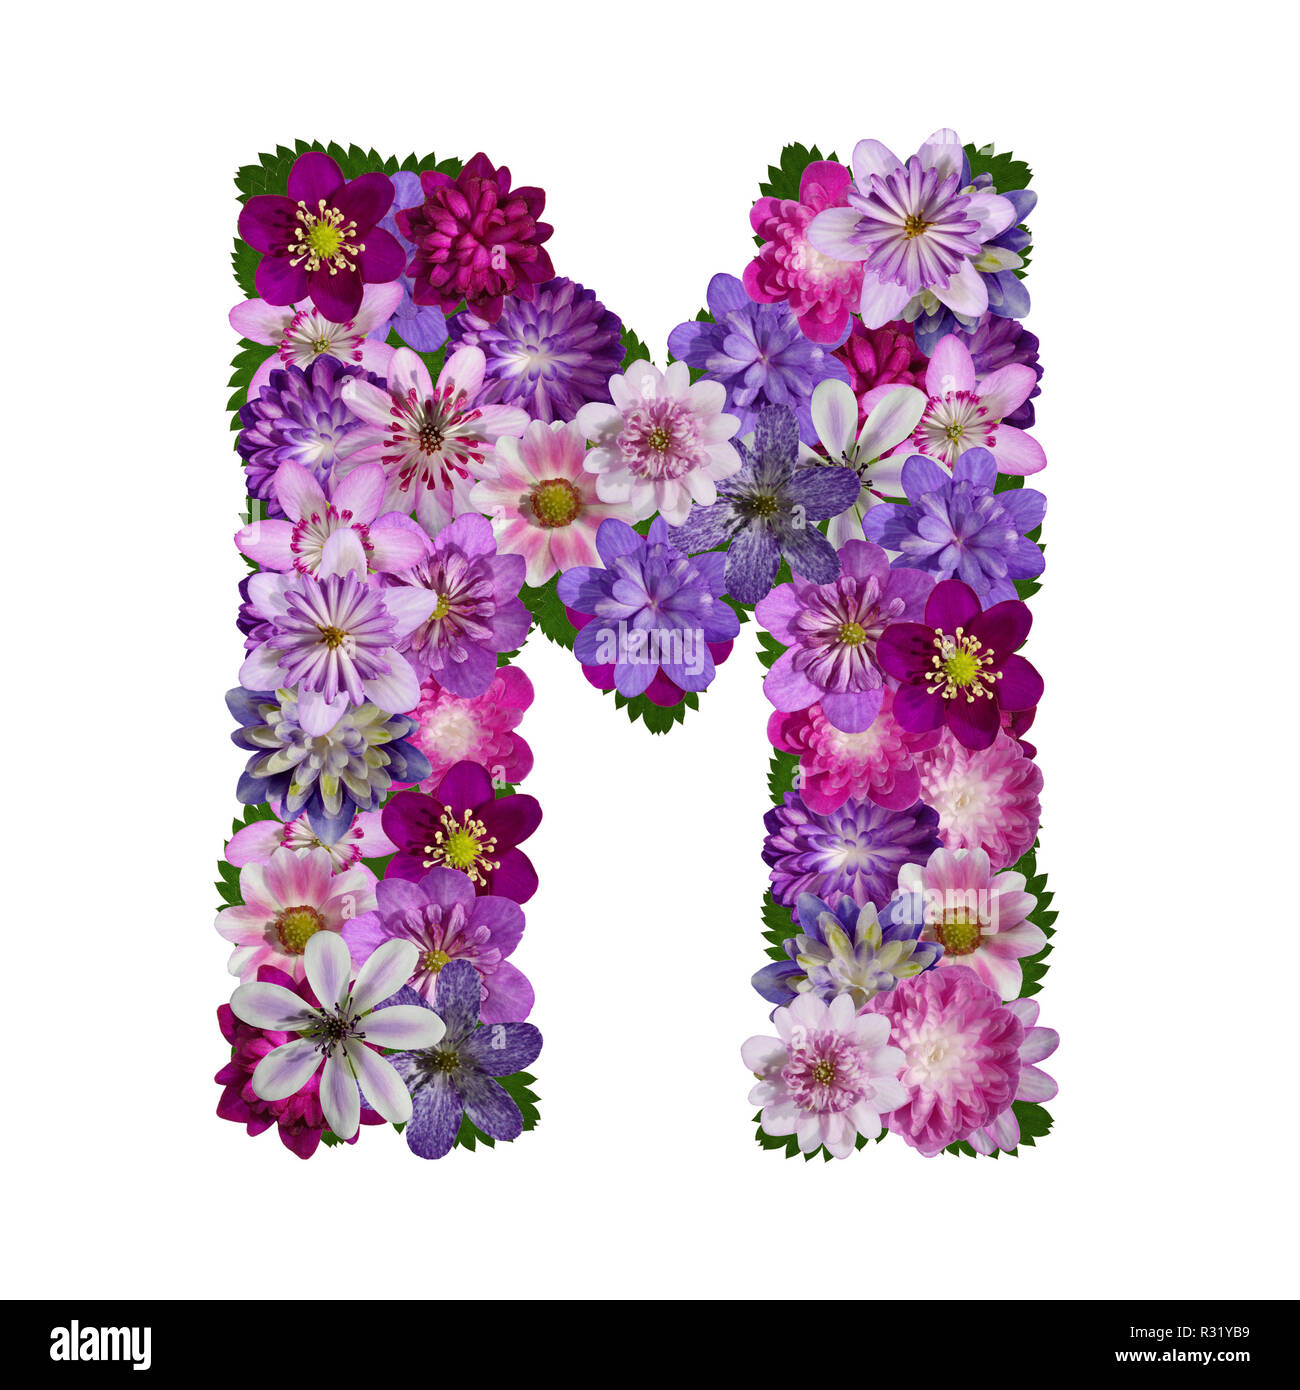 Blumen Buchstaben m Stockfotografie - Alamy